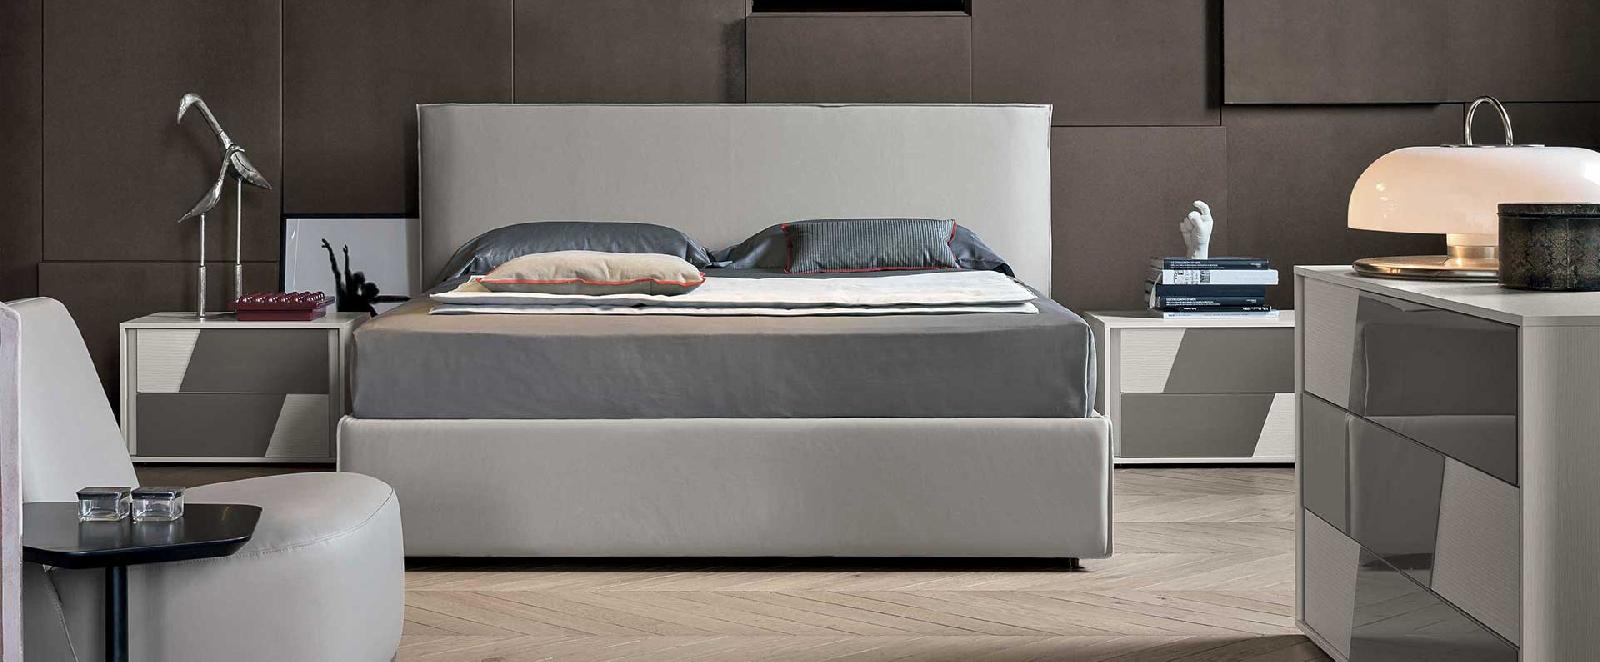 Кровати для подростков: модель Zeno